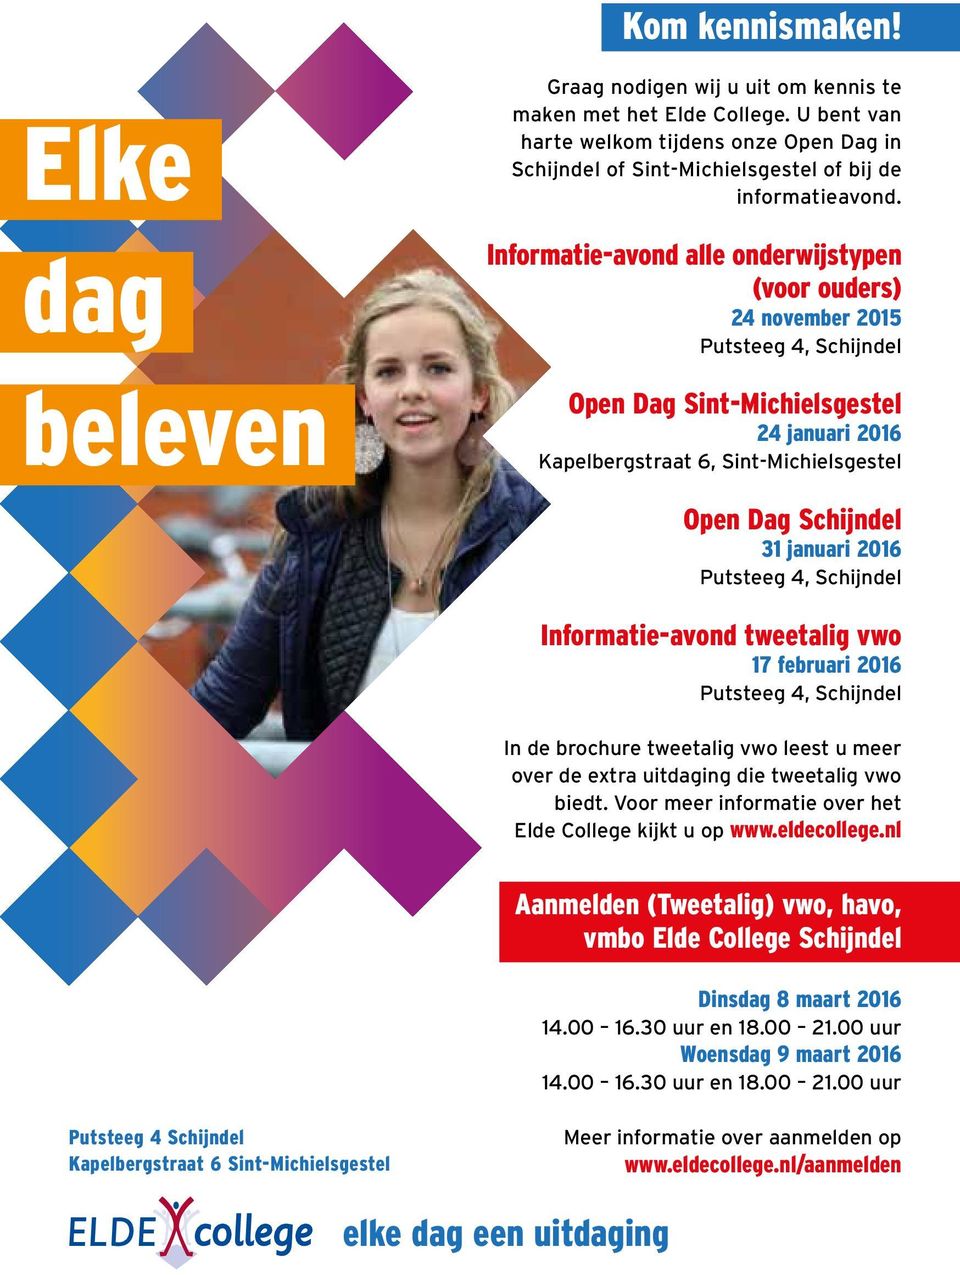 Informatie-avond alle onderwijstypen (voor ouders) 24 november 2015 Open Dag Sint-Michielsgestel 24 januari 2016 Kapelbergstraat 6, Sint-Michielsgestel Open Dag Schijndel 31 januari 2016